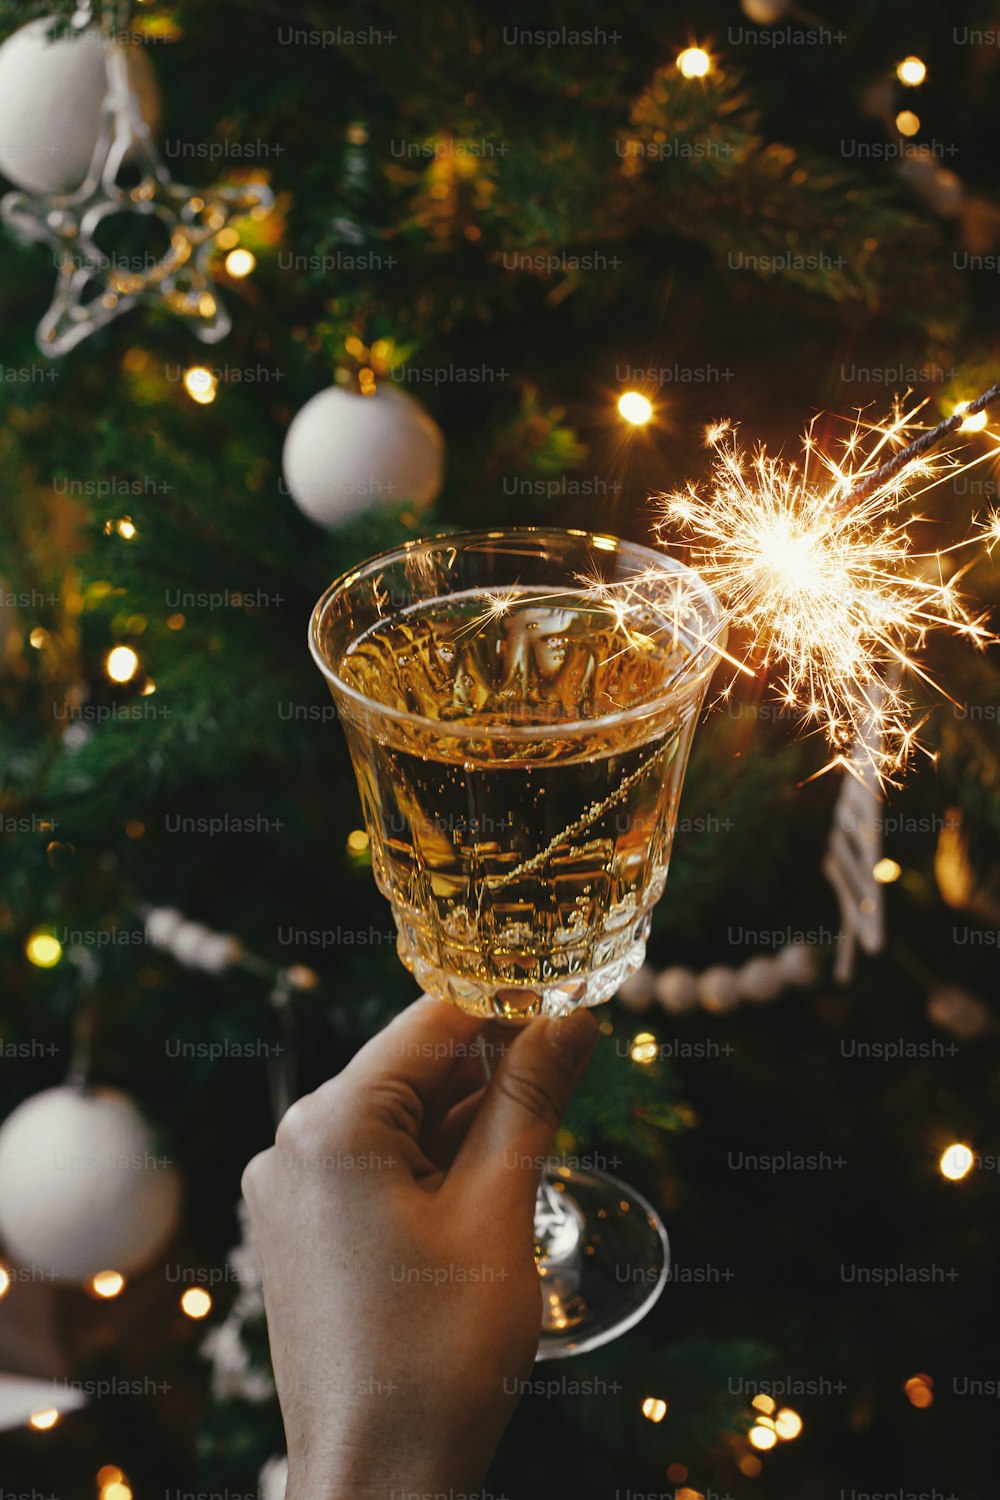 M�ão segurando a taça de champanhe com espumante queimando no fundo das luzes da árvore de Natal. Feliz Ano Novo! Fogos de artifício bengala luz e bebida na mão da mulher. Momento atmosférico. Festa de Ano Novo